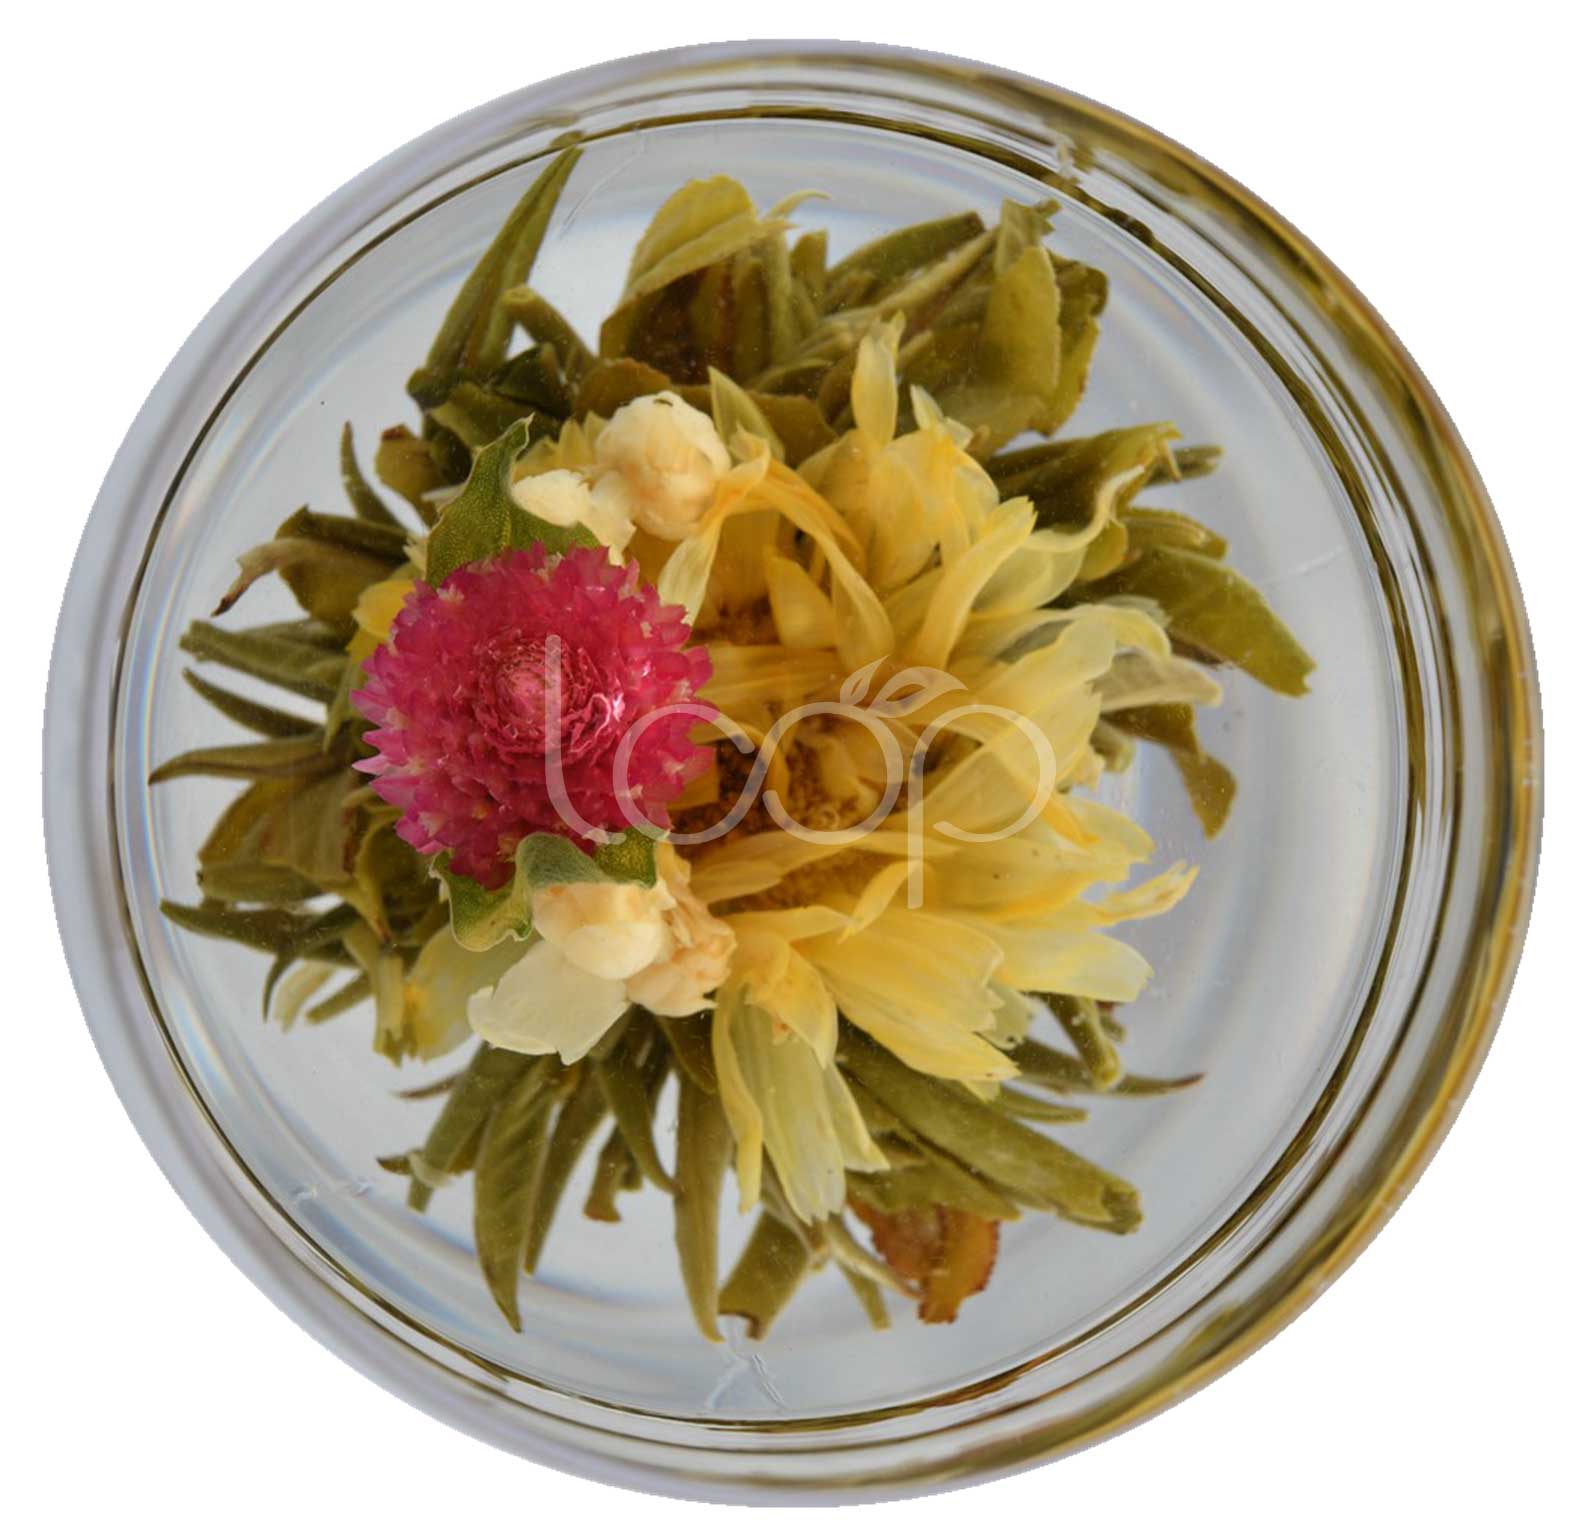 Blooming Tea Dodanni Biyu Suna Wasa Lu'u-lu'u